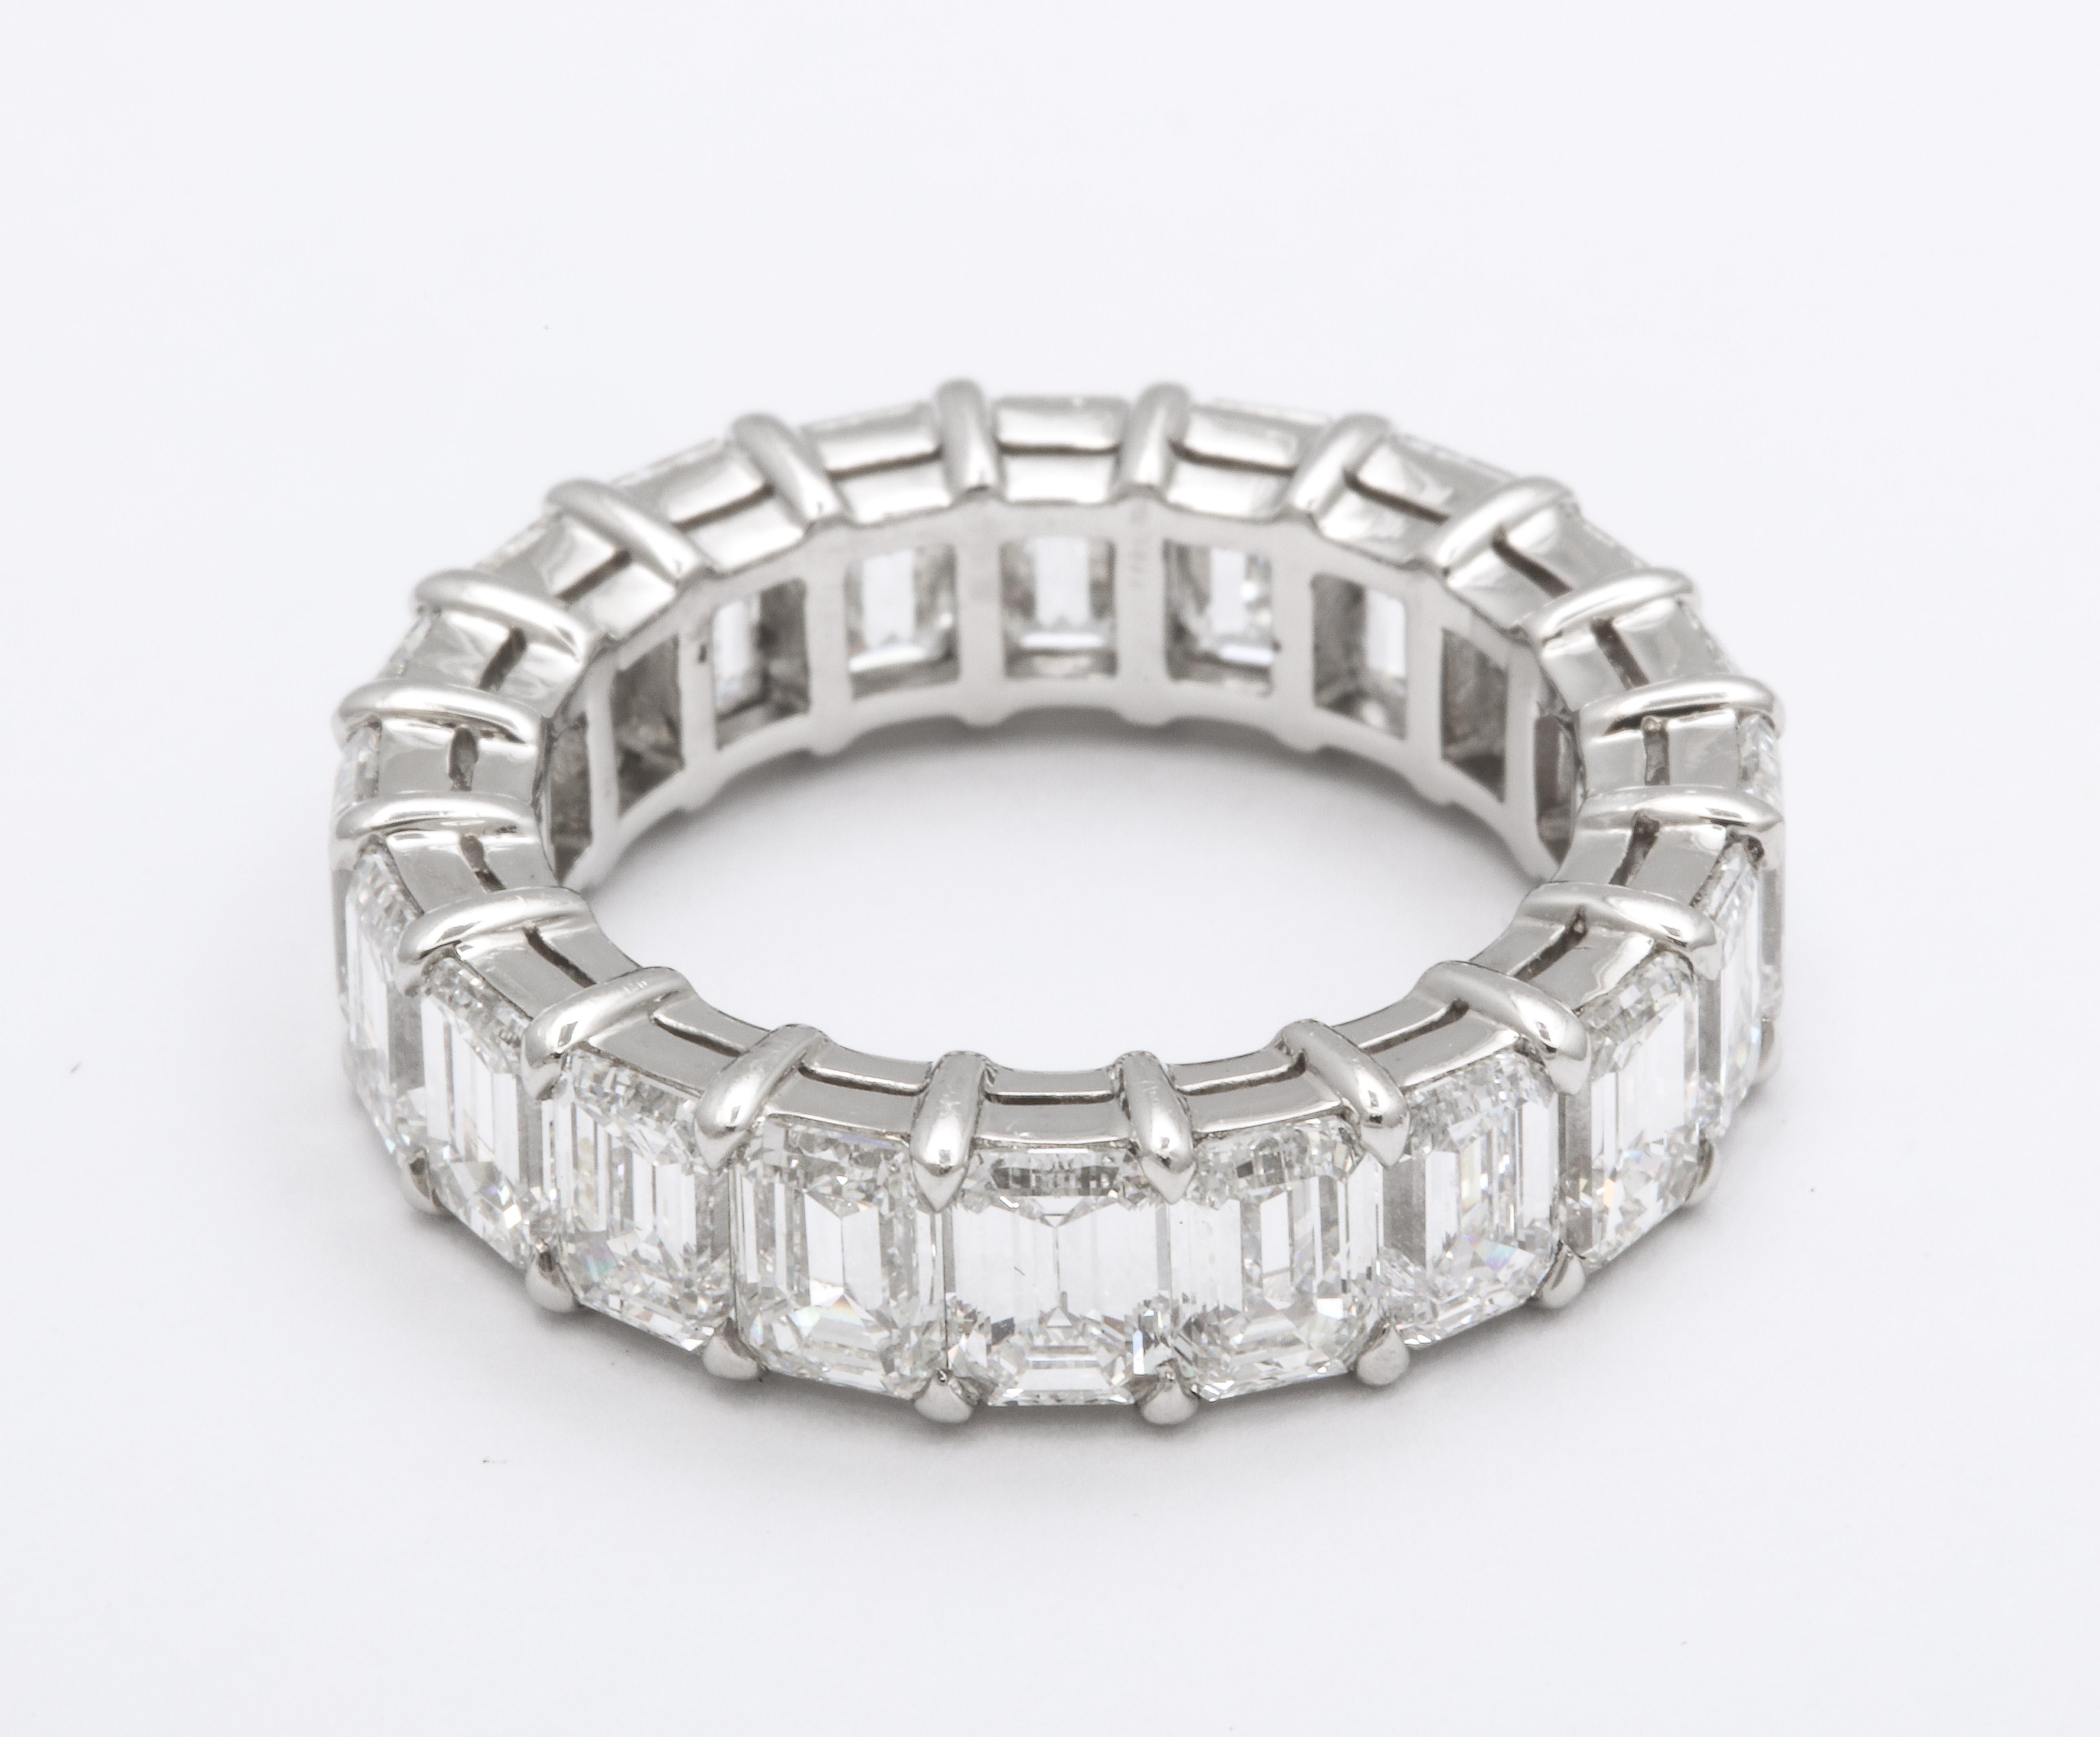 
Un groupe intemporel.

5.93 carats de diamants blancs VS+ taille émeraude sertis dans un bracelet personnalisé en or blanc 18k.

Taille 6

